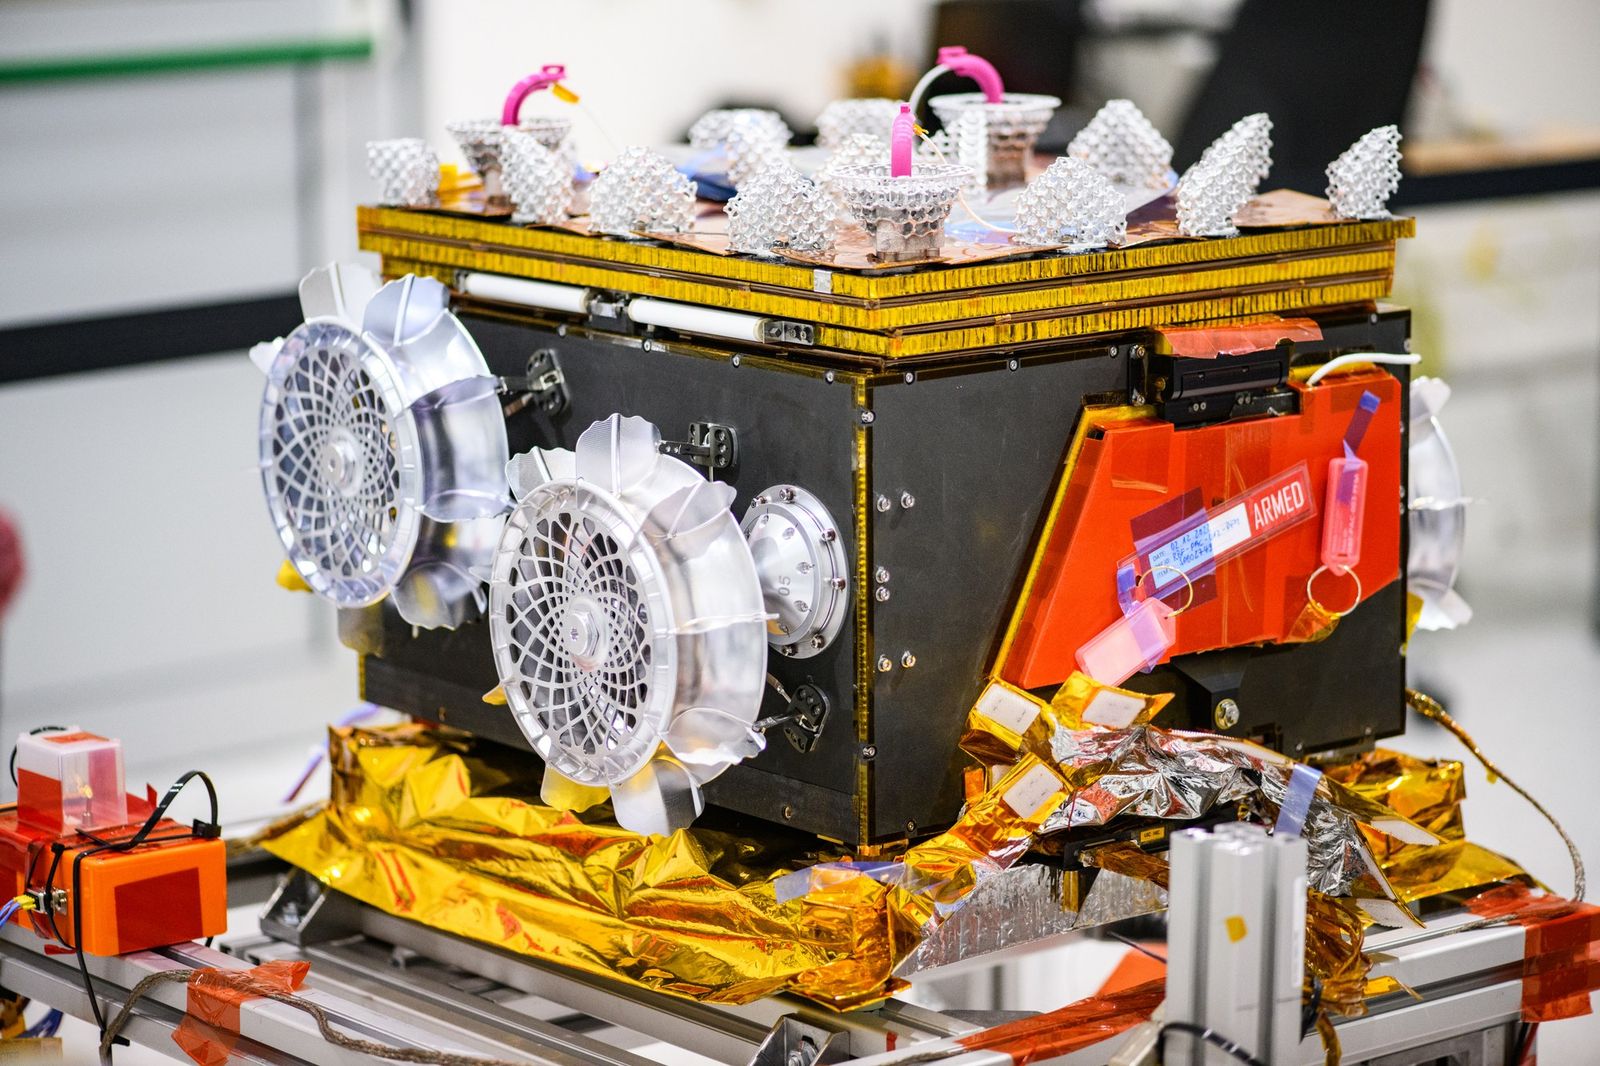 DLR-Rover soll Marsmond erkunden